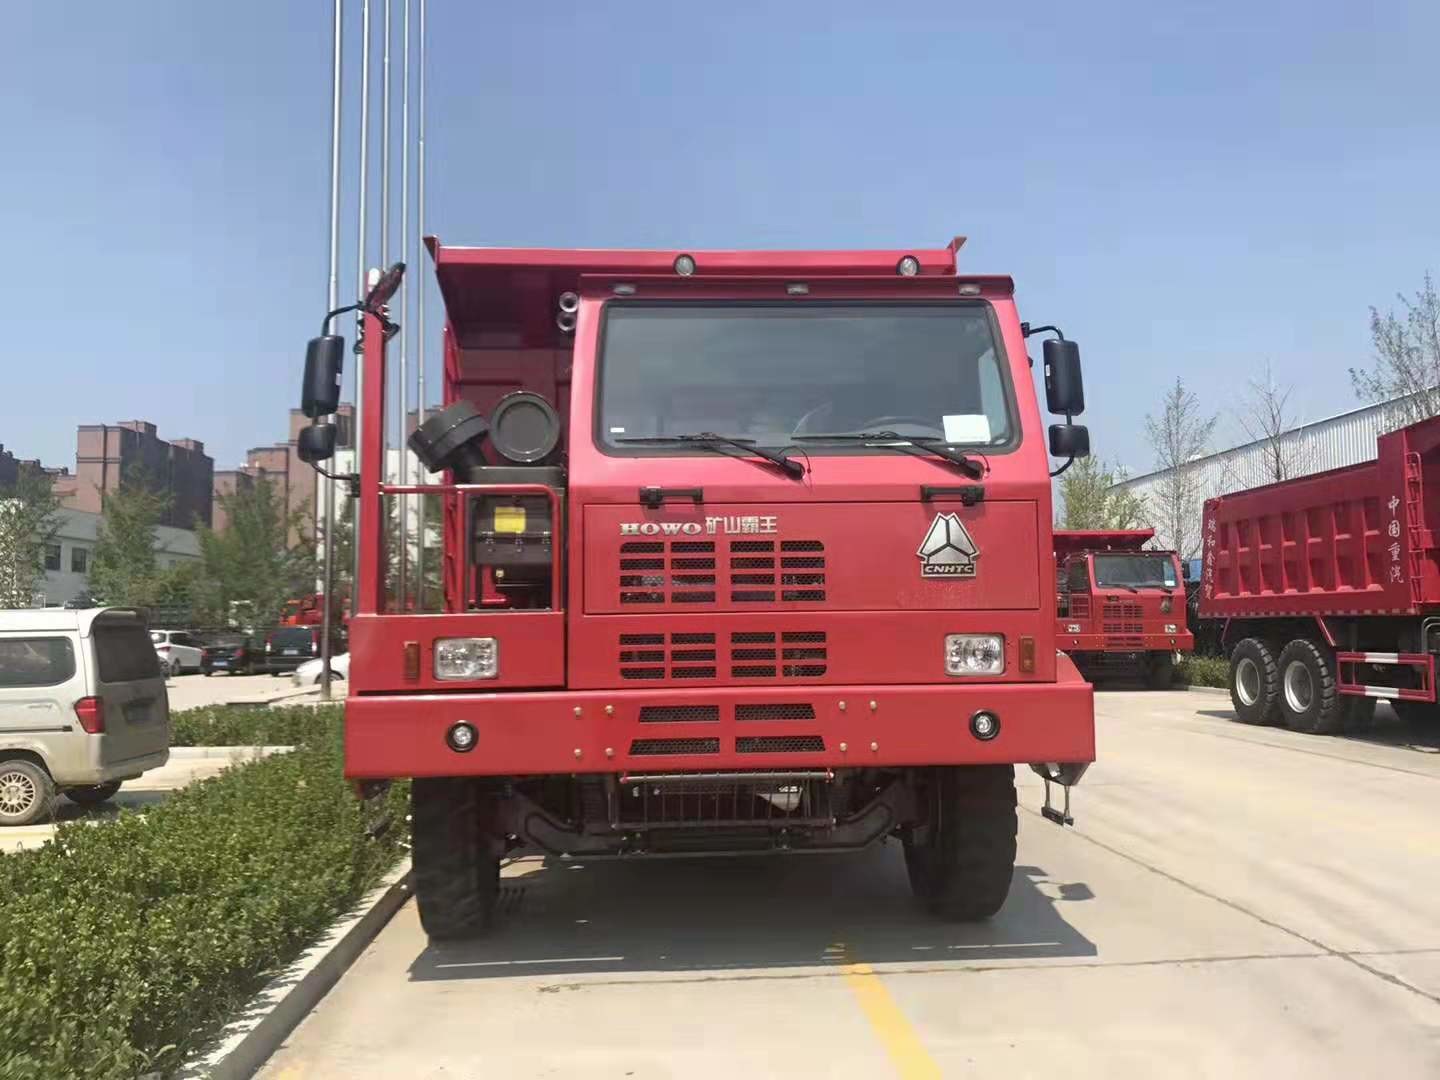 Βαρύ φορτηγό απορρίψεων μεταλλείας κόκκινου χρώματος 6*4/χειρωνακτικός τύπος μετάδοσης 30 Tipper τόνοι φορτηγών